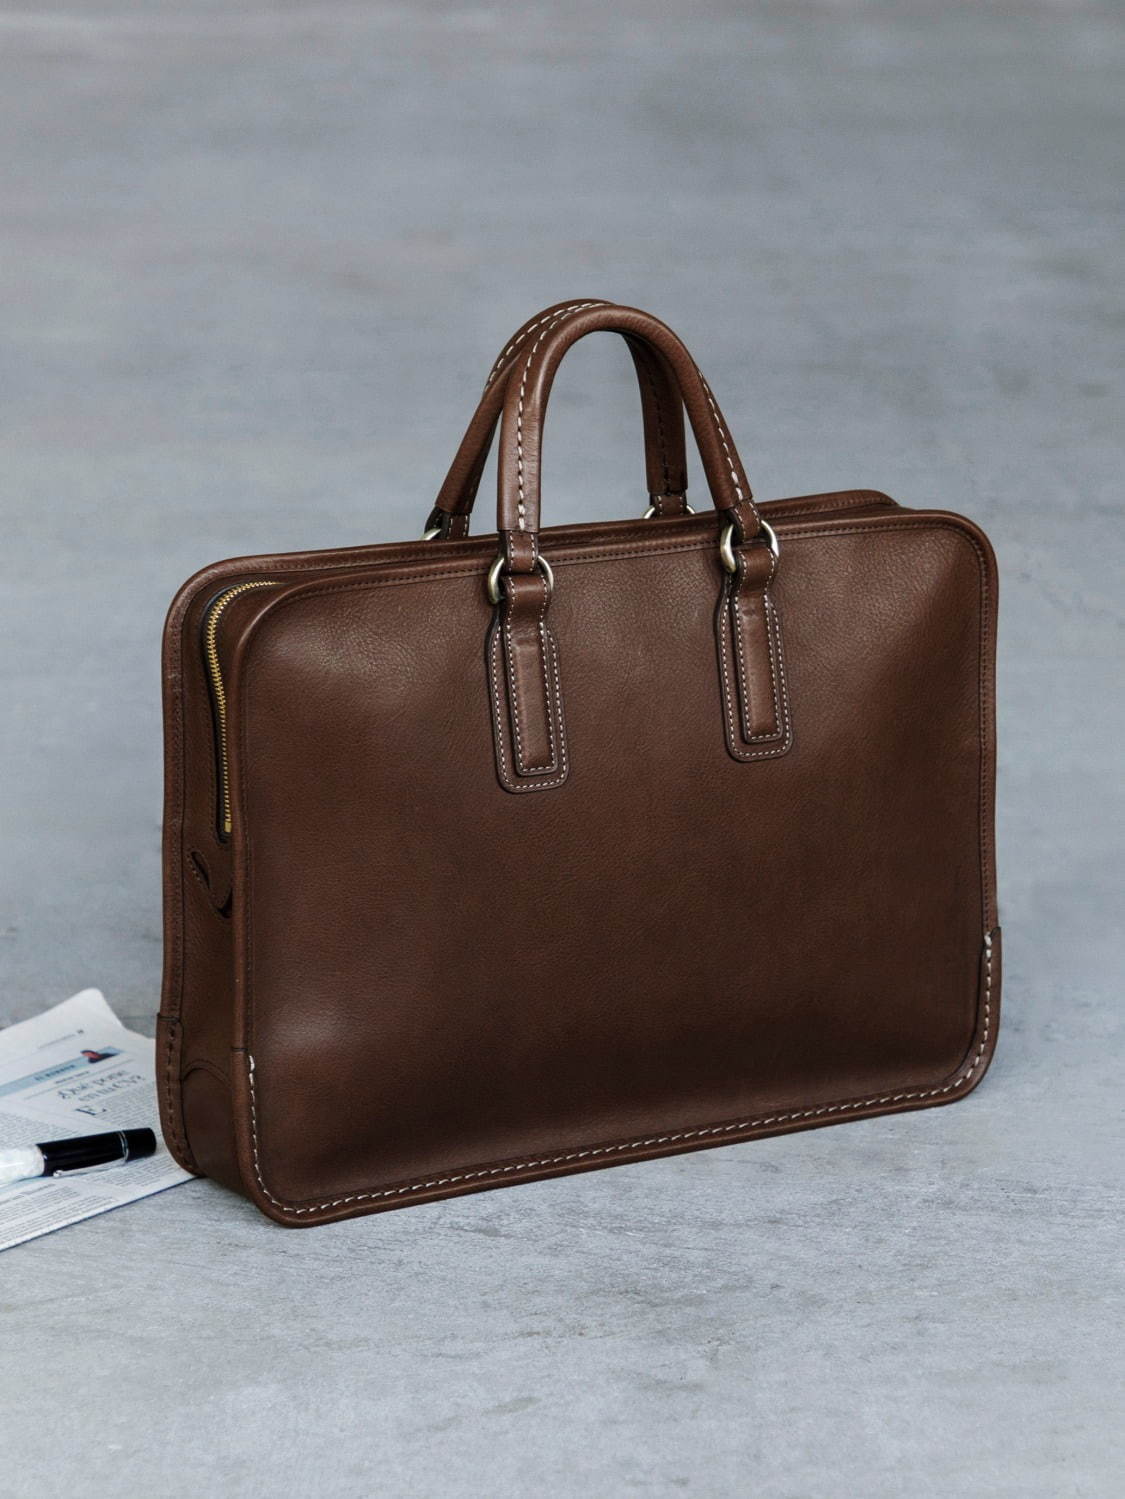 土屋鞄製造所のメンズバッグ「ウルバーノ」に新色“チョコ”、ブリーフ